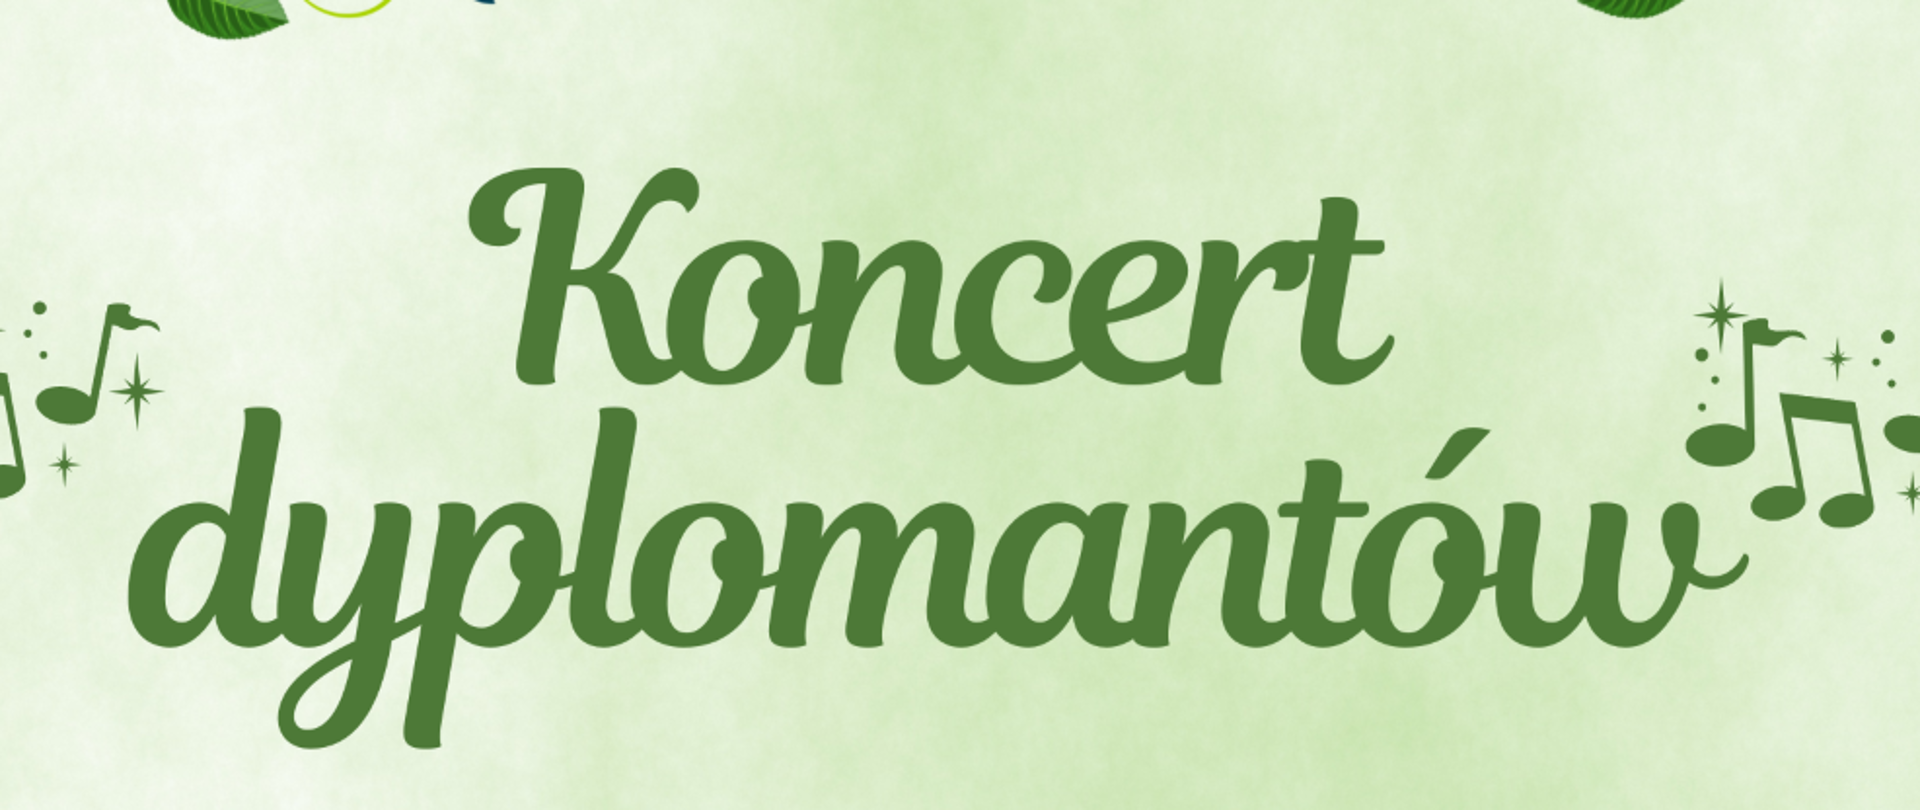 plakat w zielonej tonacji zawierający tytuł: "Koncert Dyplomantów" oraz datę i godzinę koncertu 